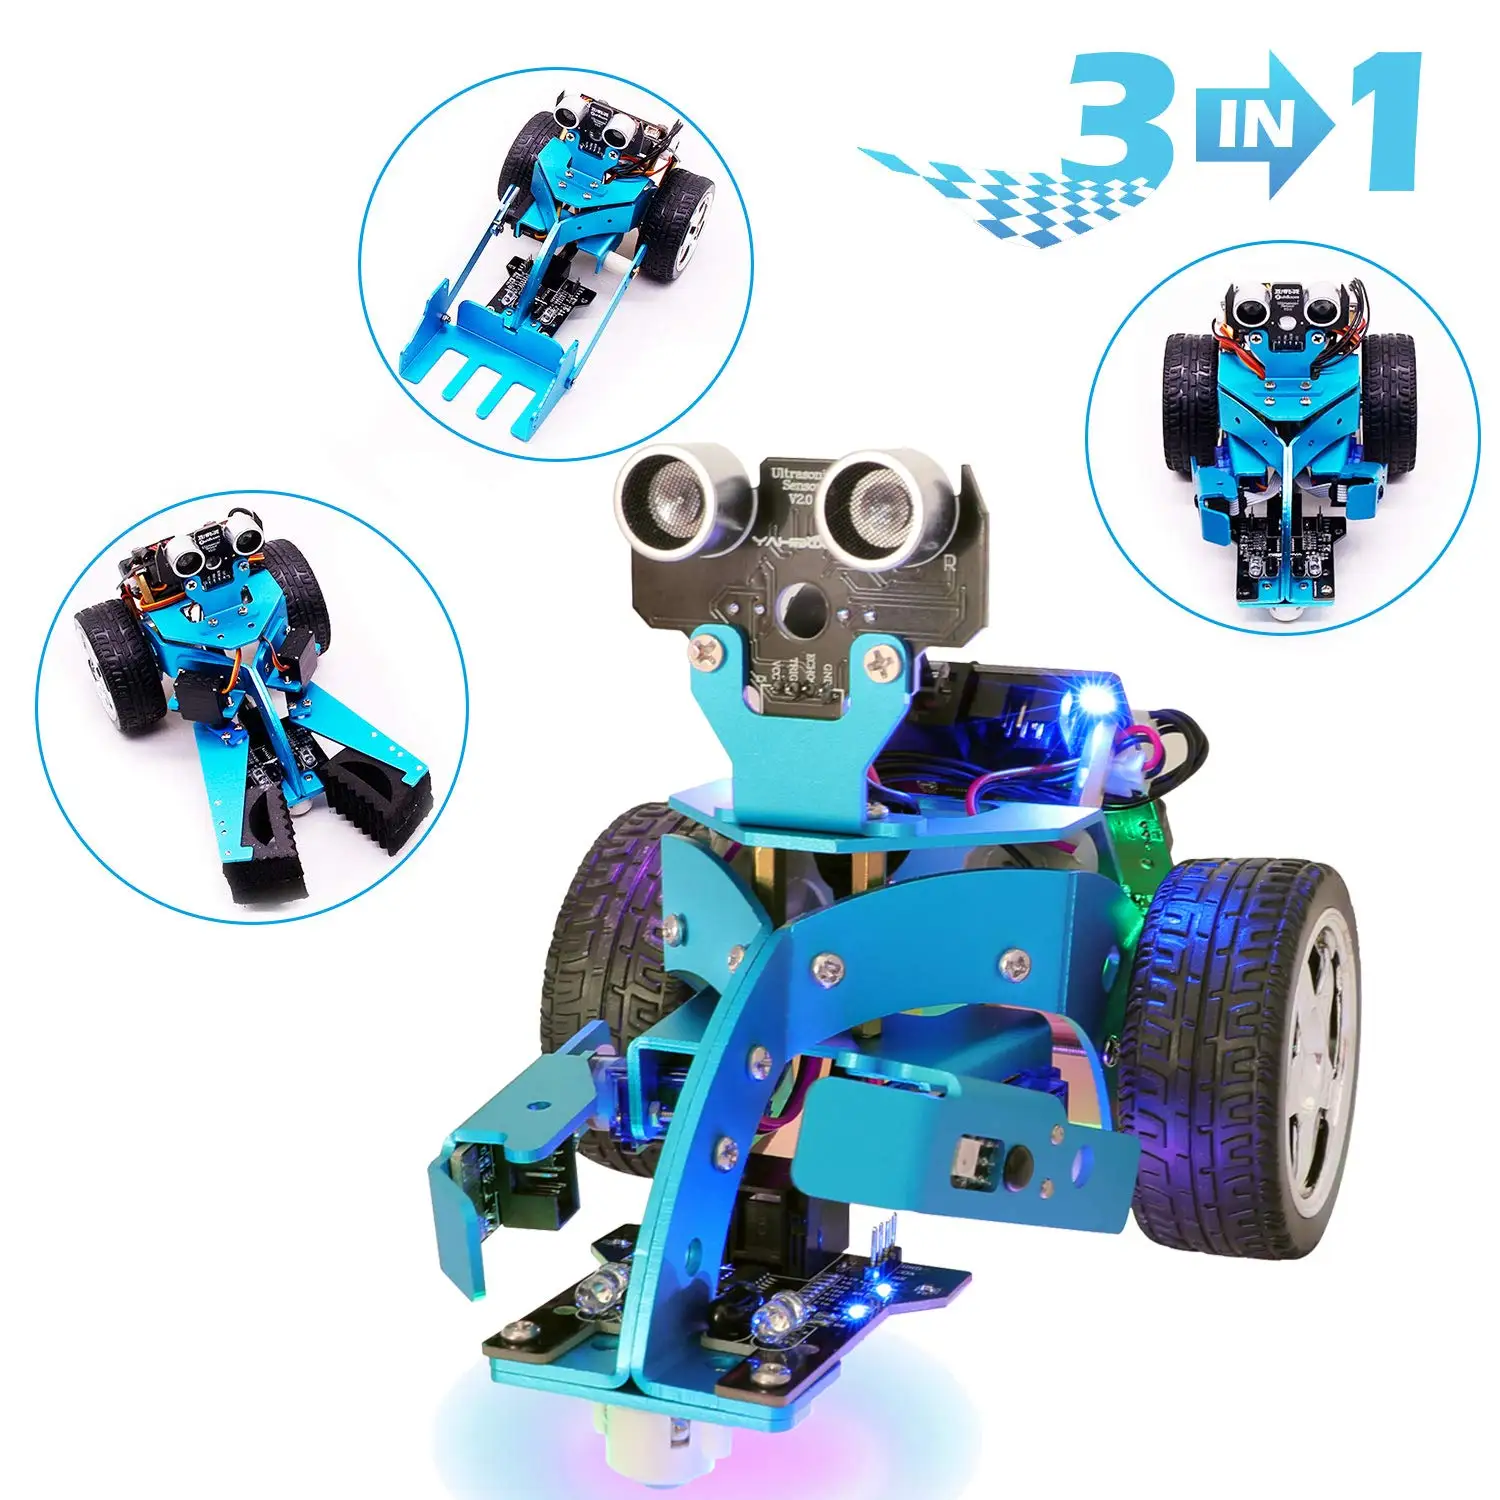 Для Mirco: бит Diy 3 в 1 Умный программируемый робот-автомобиль Набор для обучения на стволе для 10+ детей, чтобы узнать науку робототехники Hellobot Starte